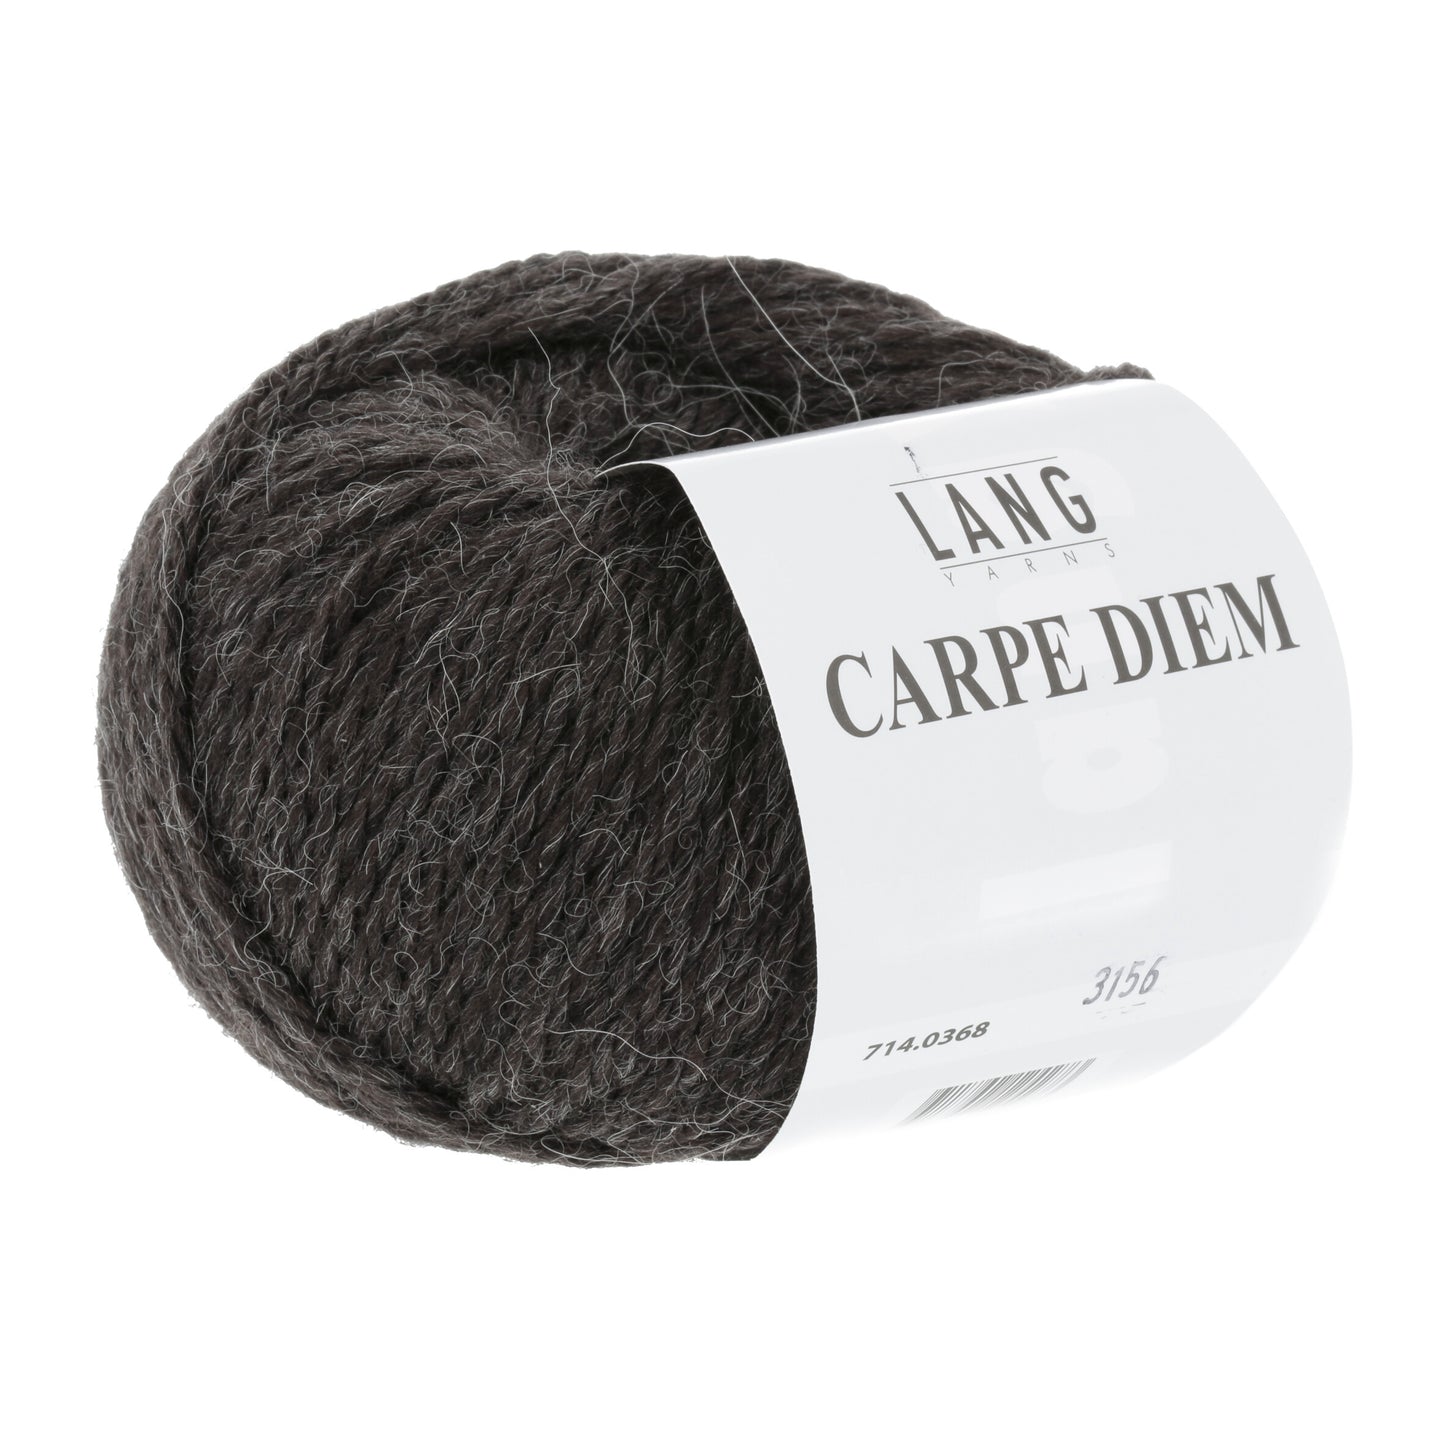 Lang Yarns Carpe Diem / 0368